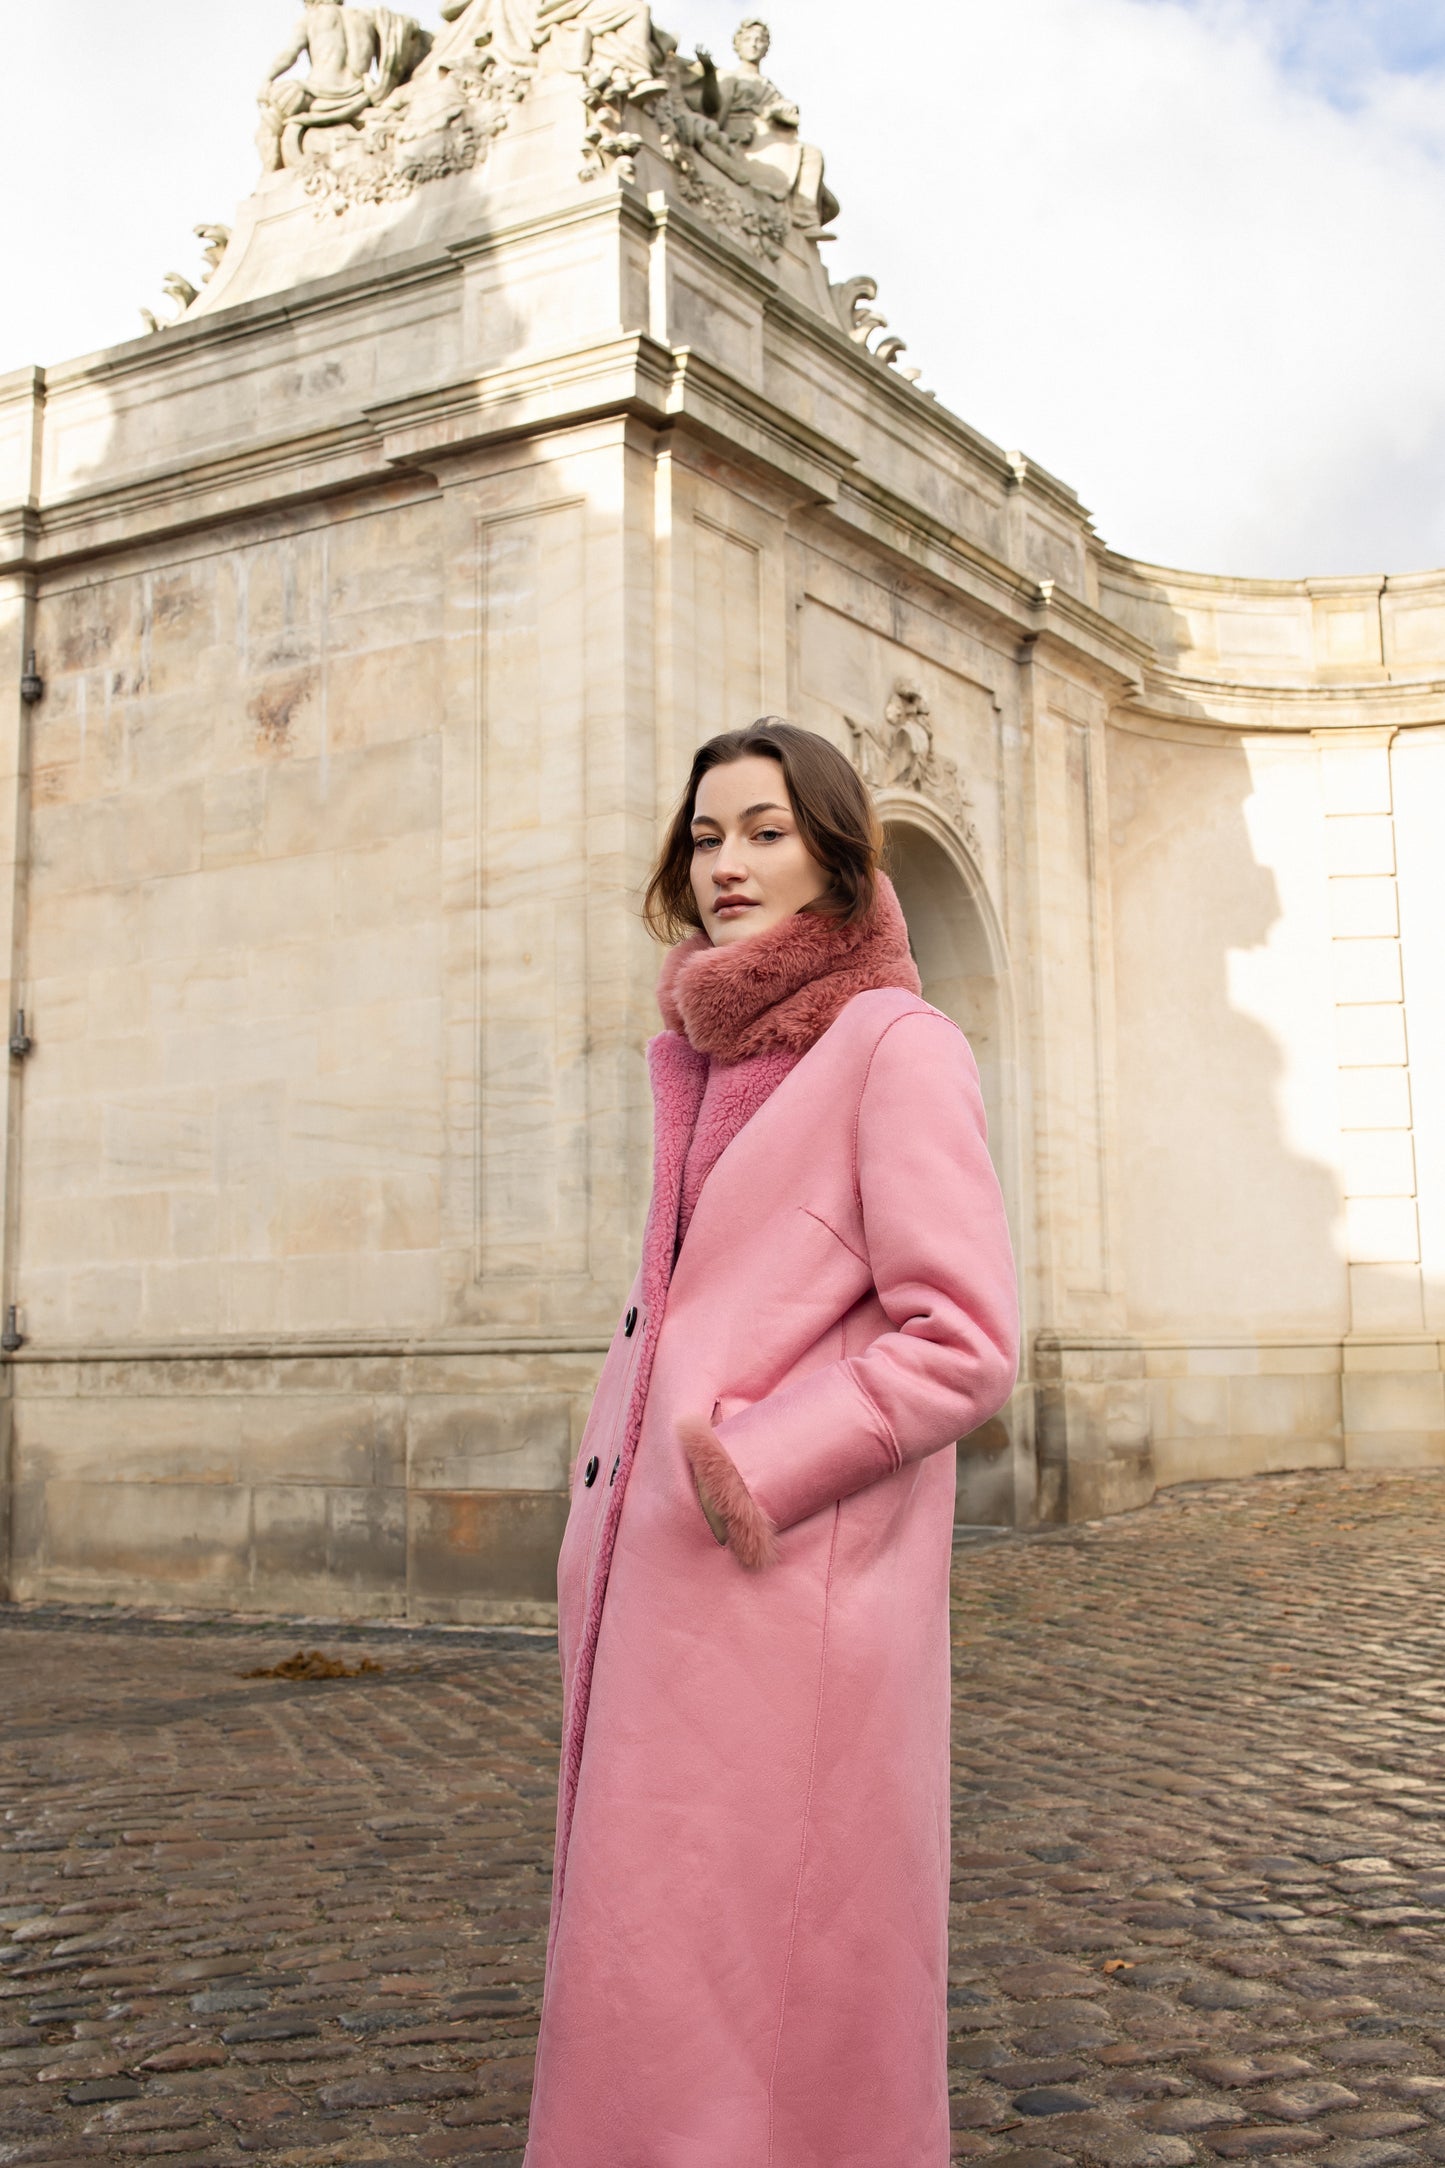 Leona Wool Coat Long Pink